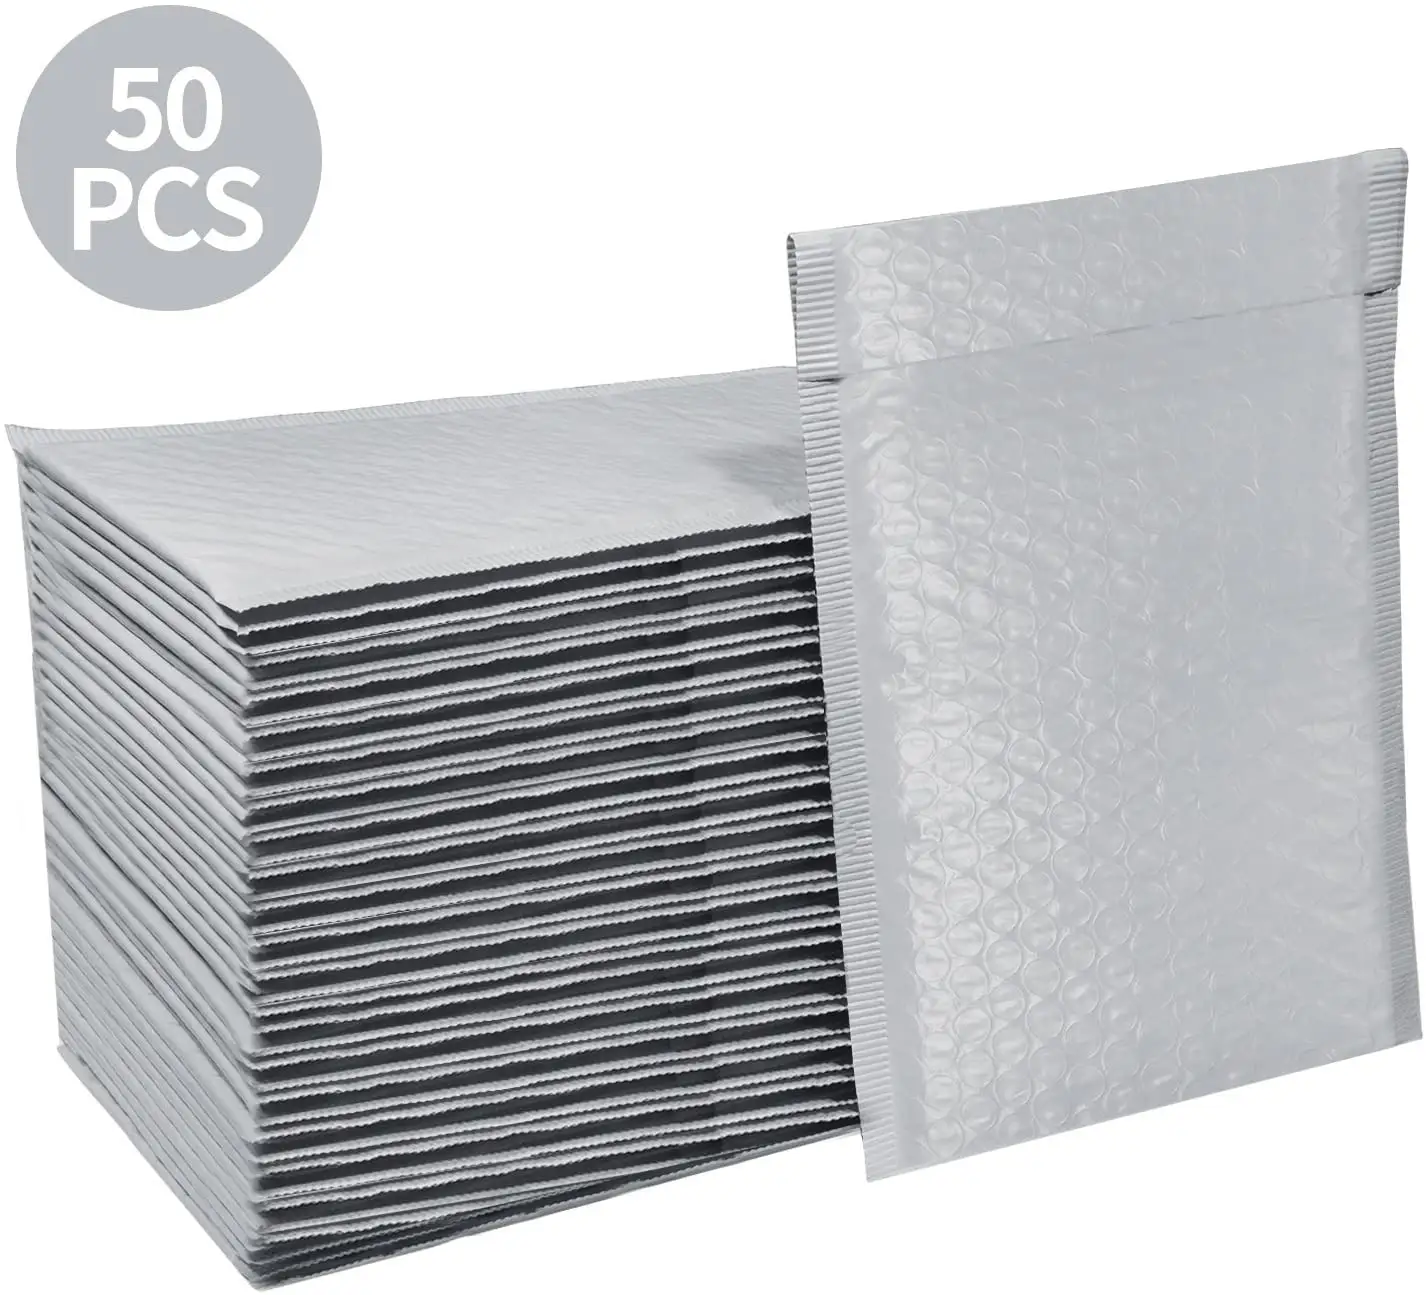 6 × 10ポリバブルメーラーSelf Seal Gray Padded Enve lopesenvelopes無料bagsr遅いmog送料無料バブルmaile